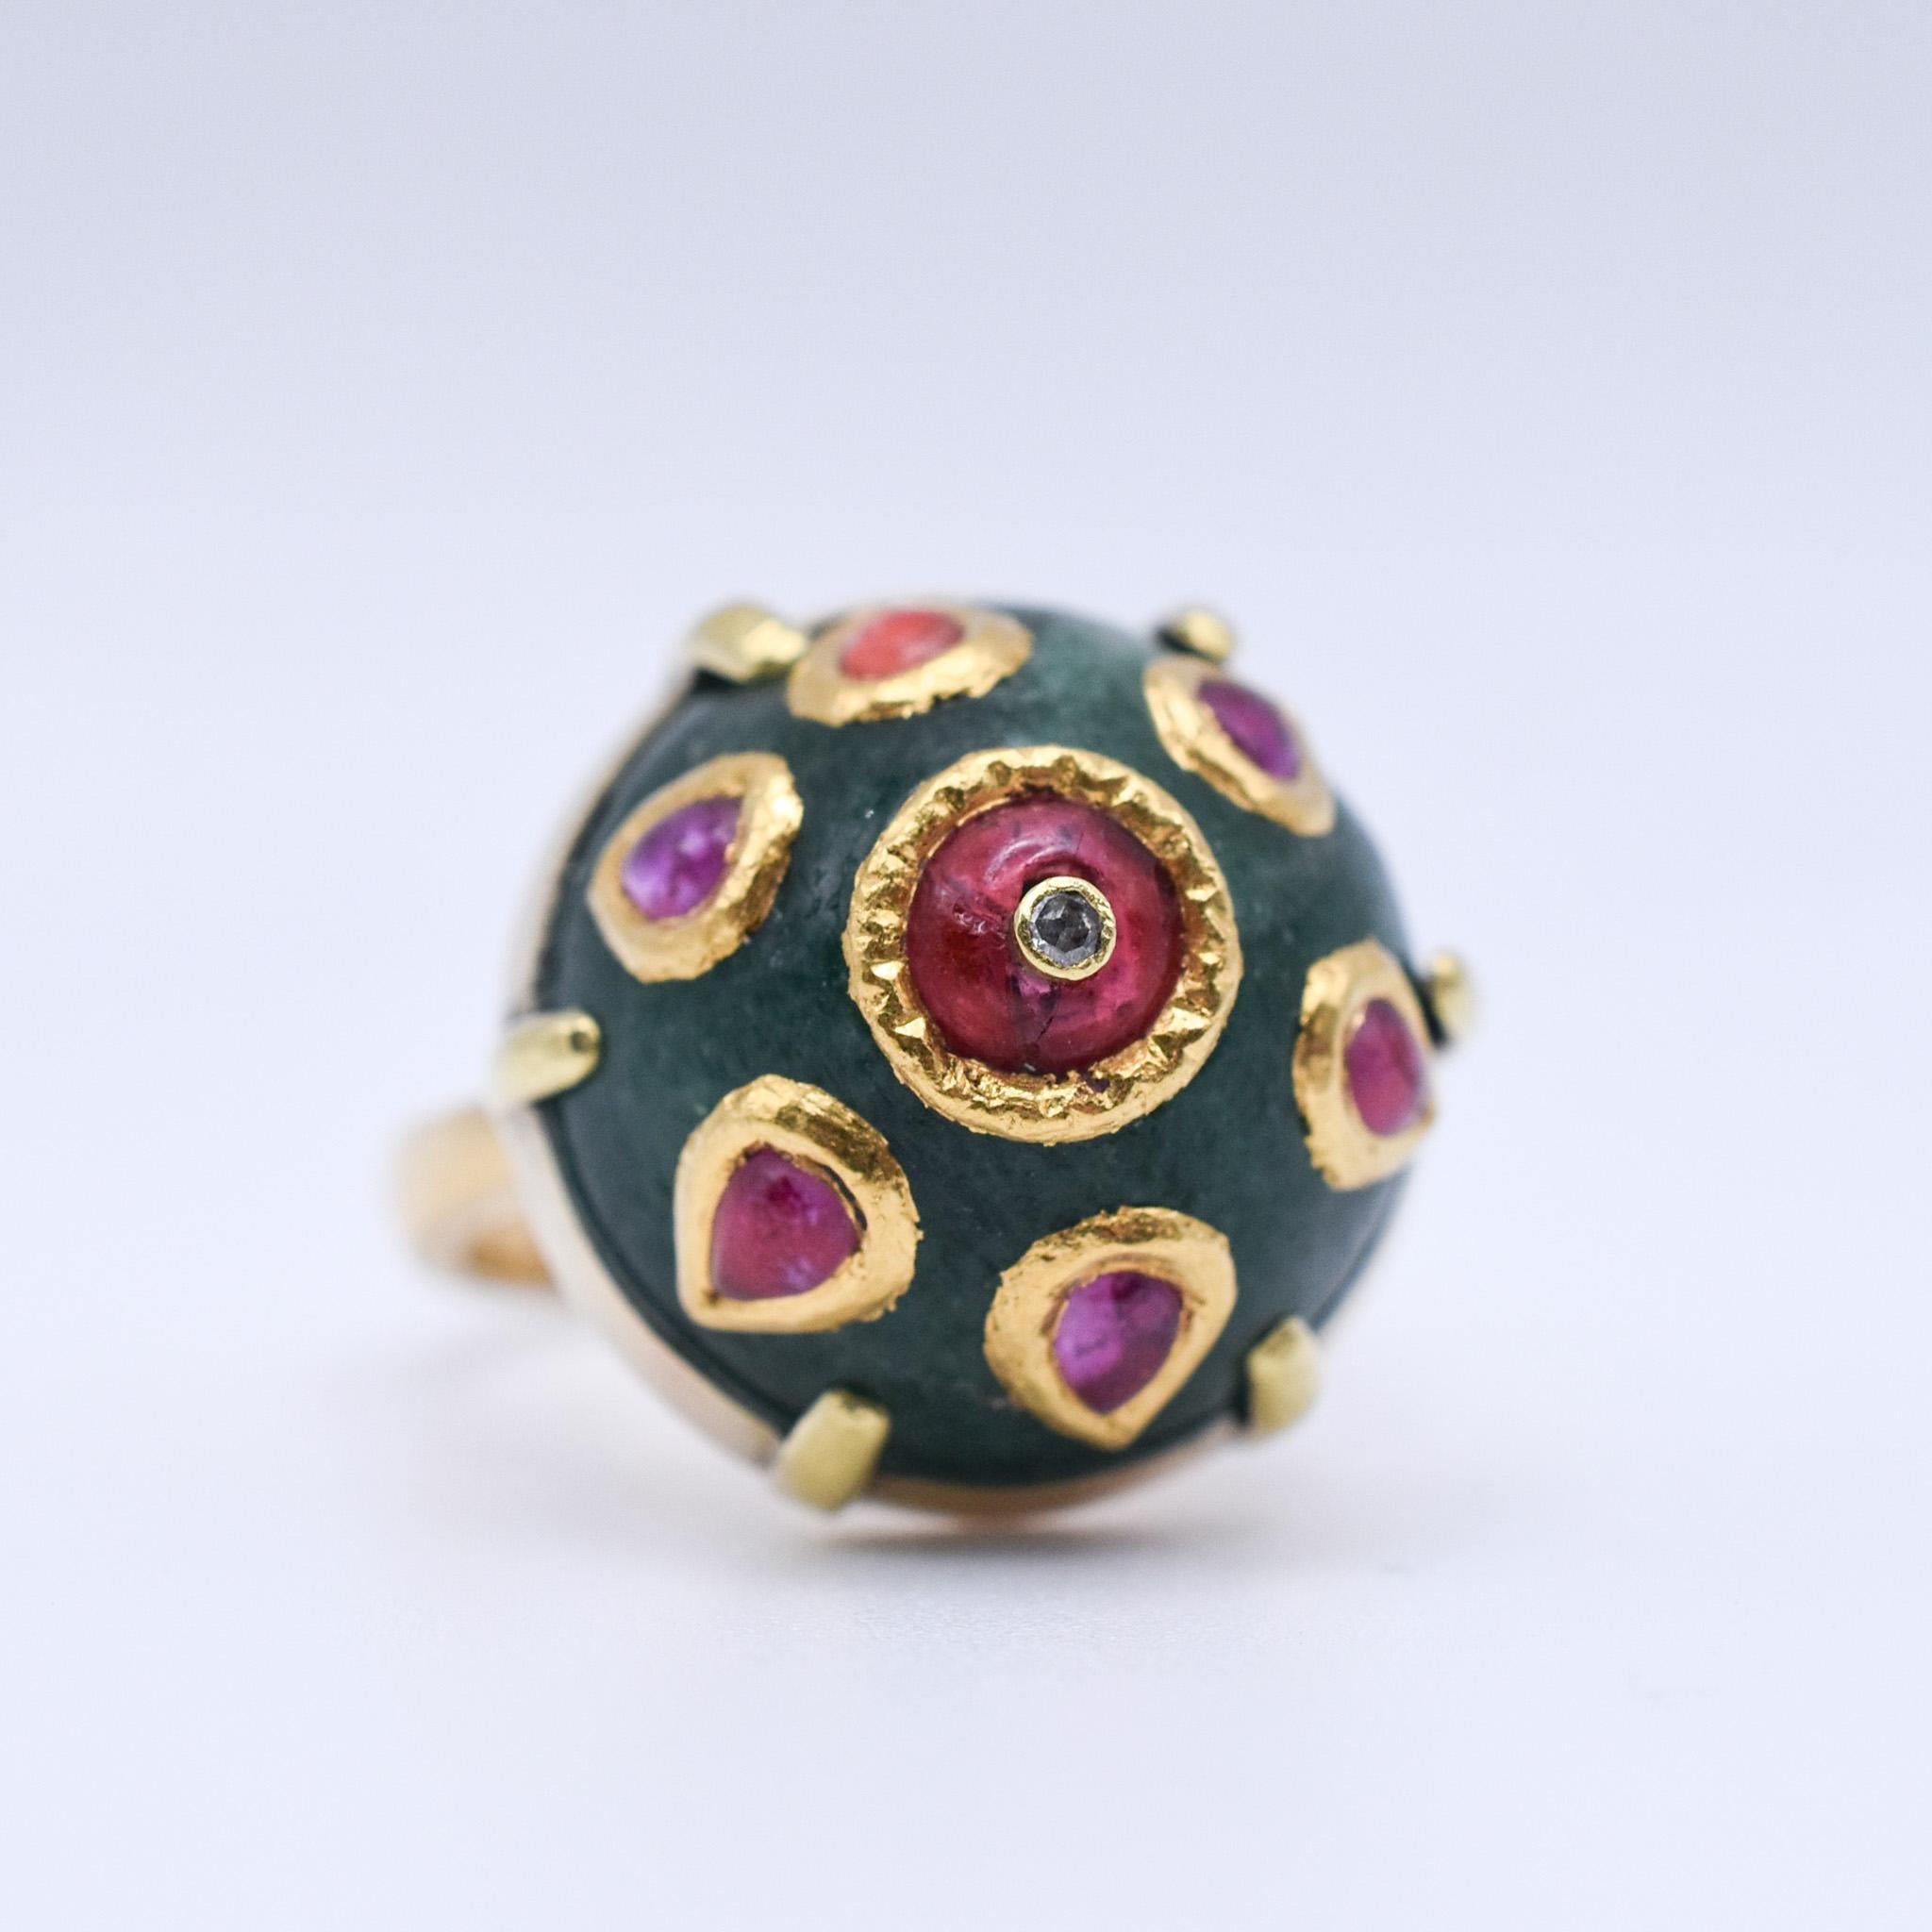 Eine schöne indische Bombe Jade Ring mit Rubin Akzente alle über die Kuppel, in 18k Gelbgold montiert. Circa 1960.